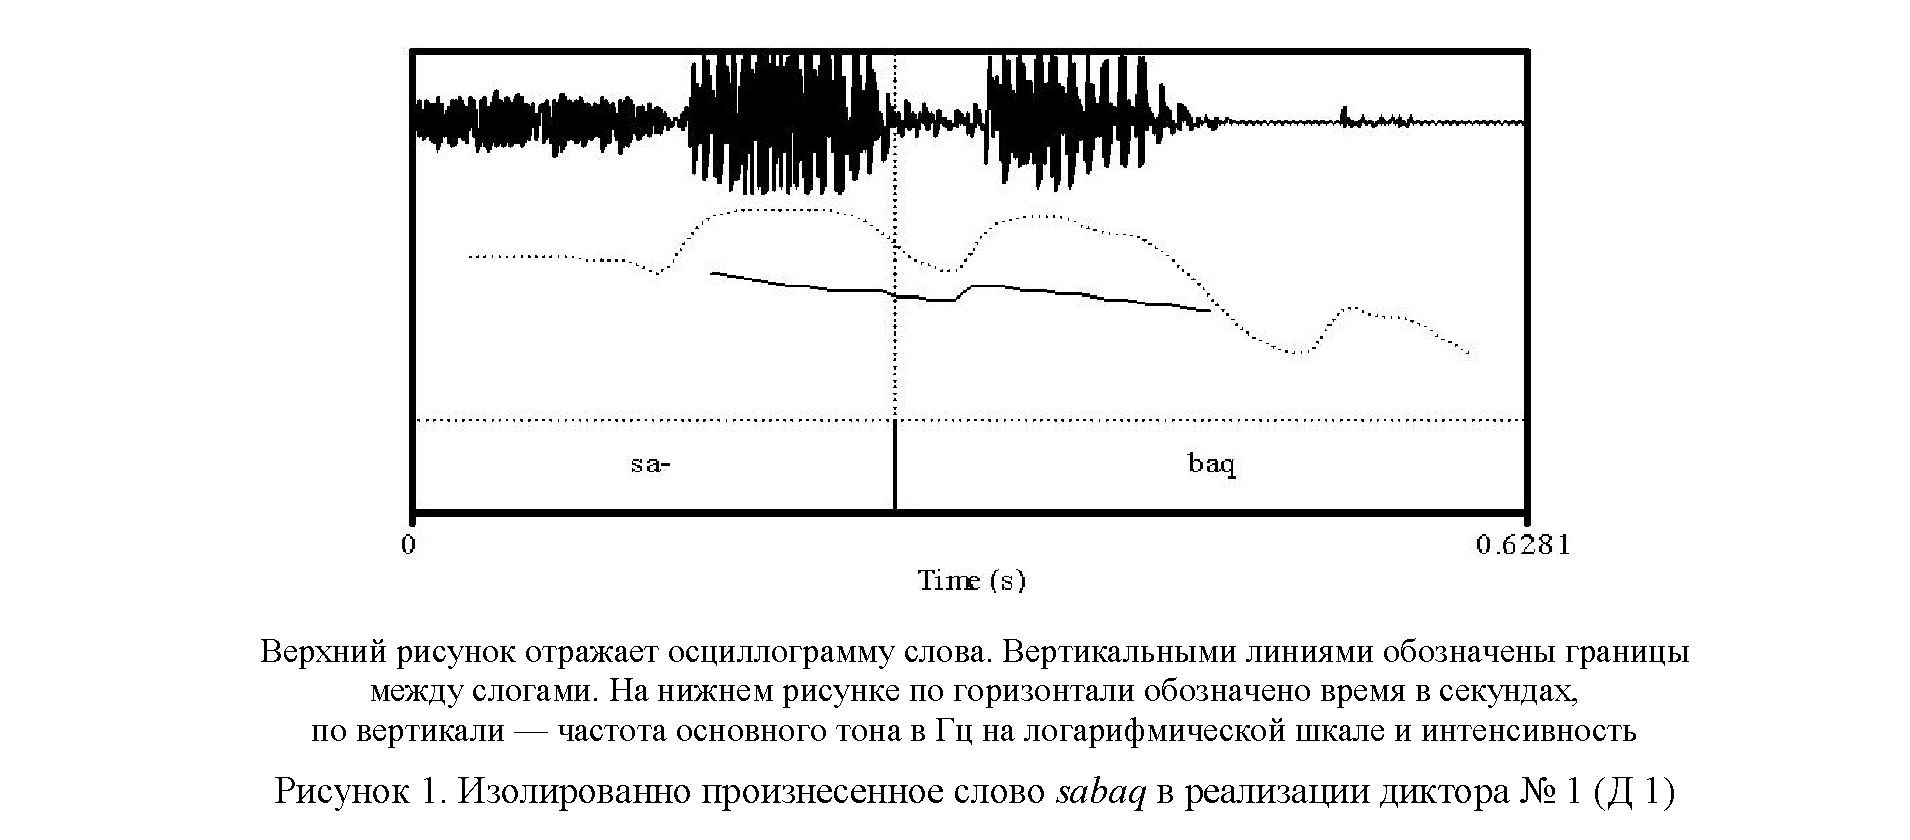 Инструментальный анализ длительности гласных казахского языка (на основе латинской графики)